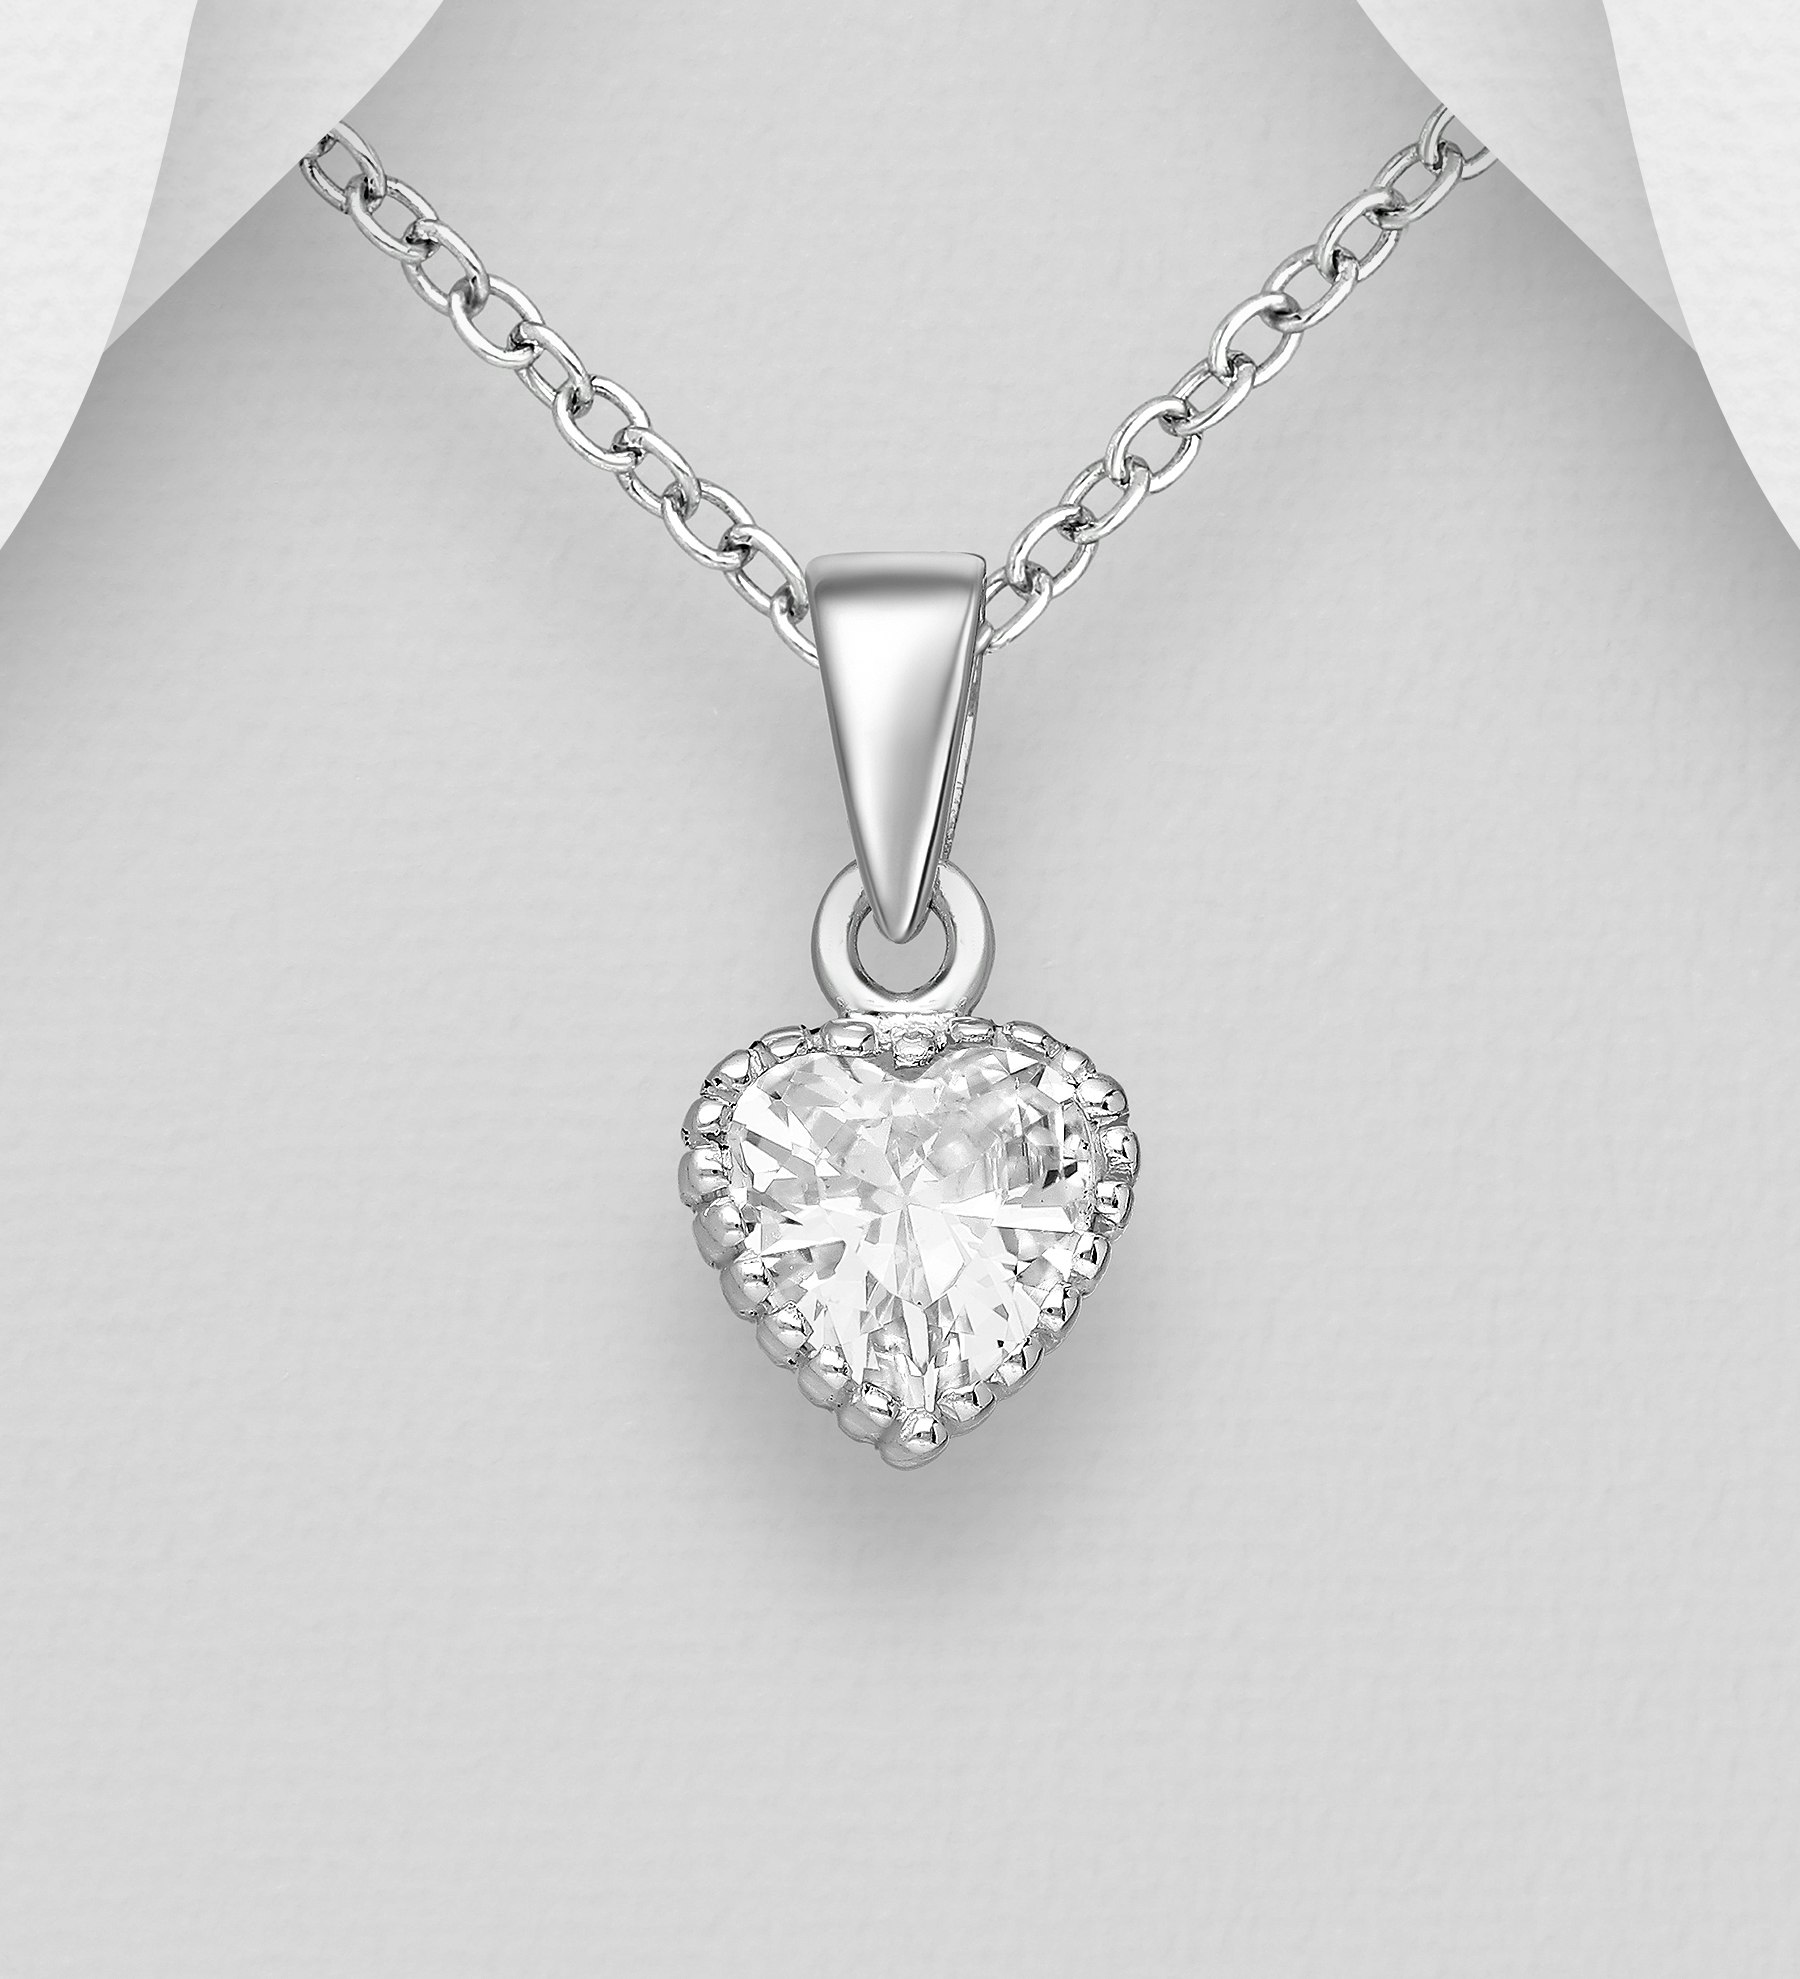 Halsband Hjärta - Silverhalsband Hjärta av cubic zirkonia  - hjärthalsband med silverhjärta i äkta silver